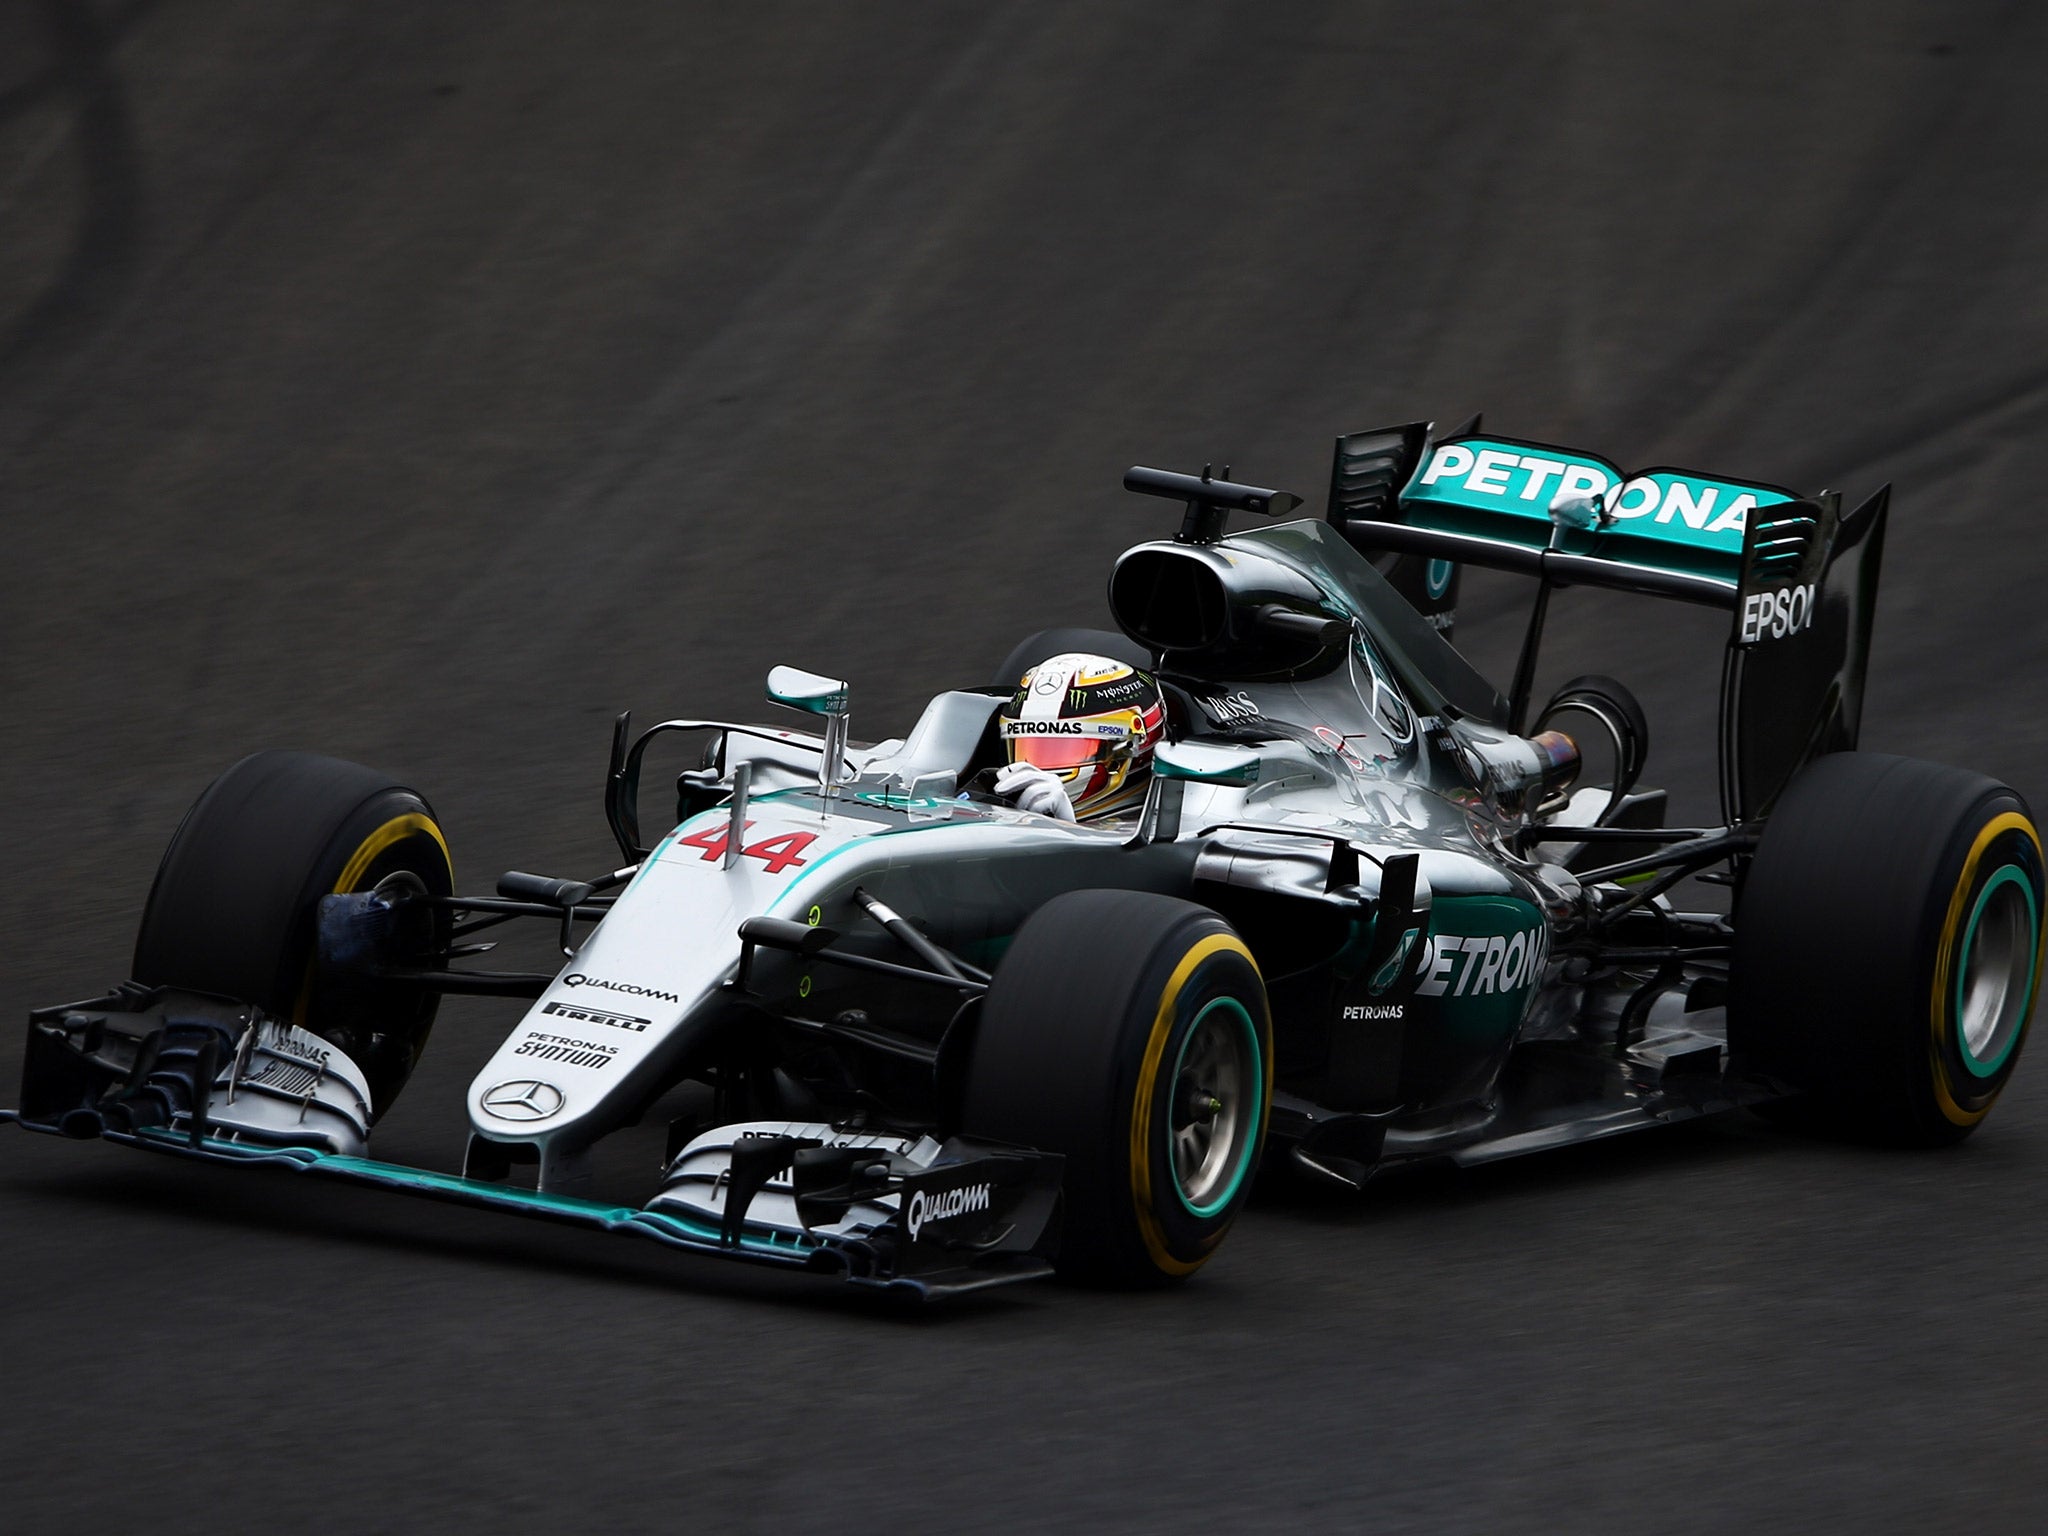 Lewis Hamilton won the Austrian Grand Prix after a last-lap crash